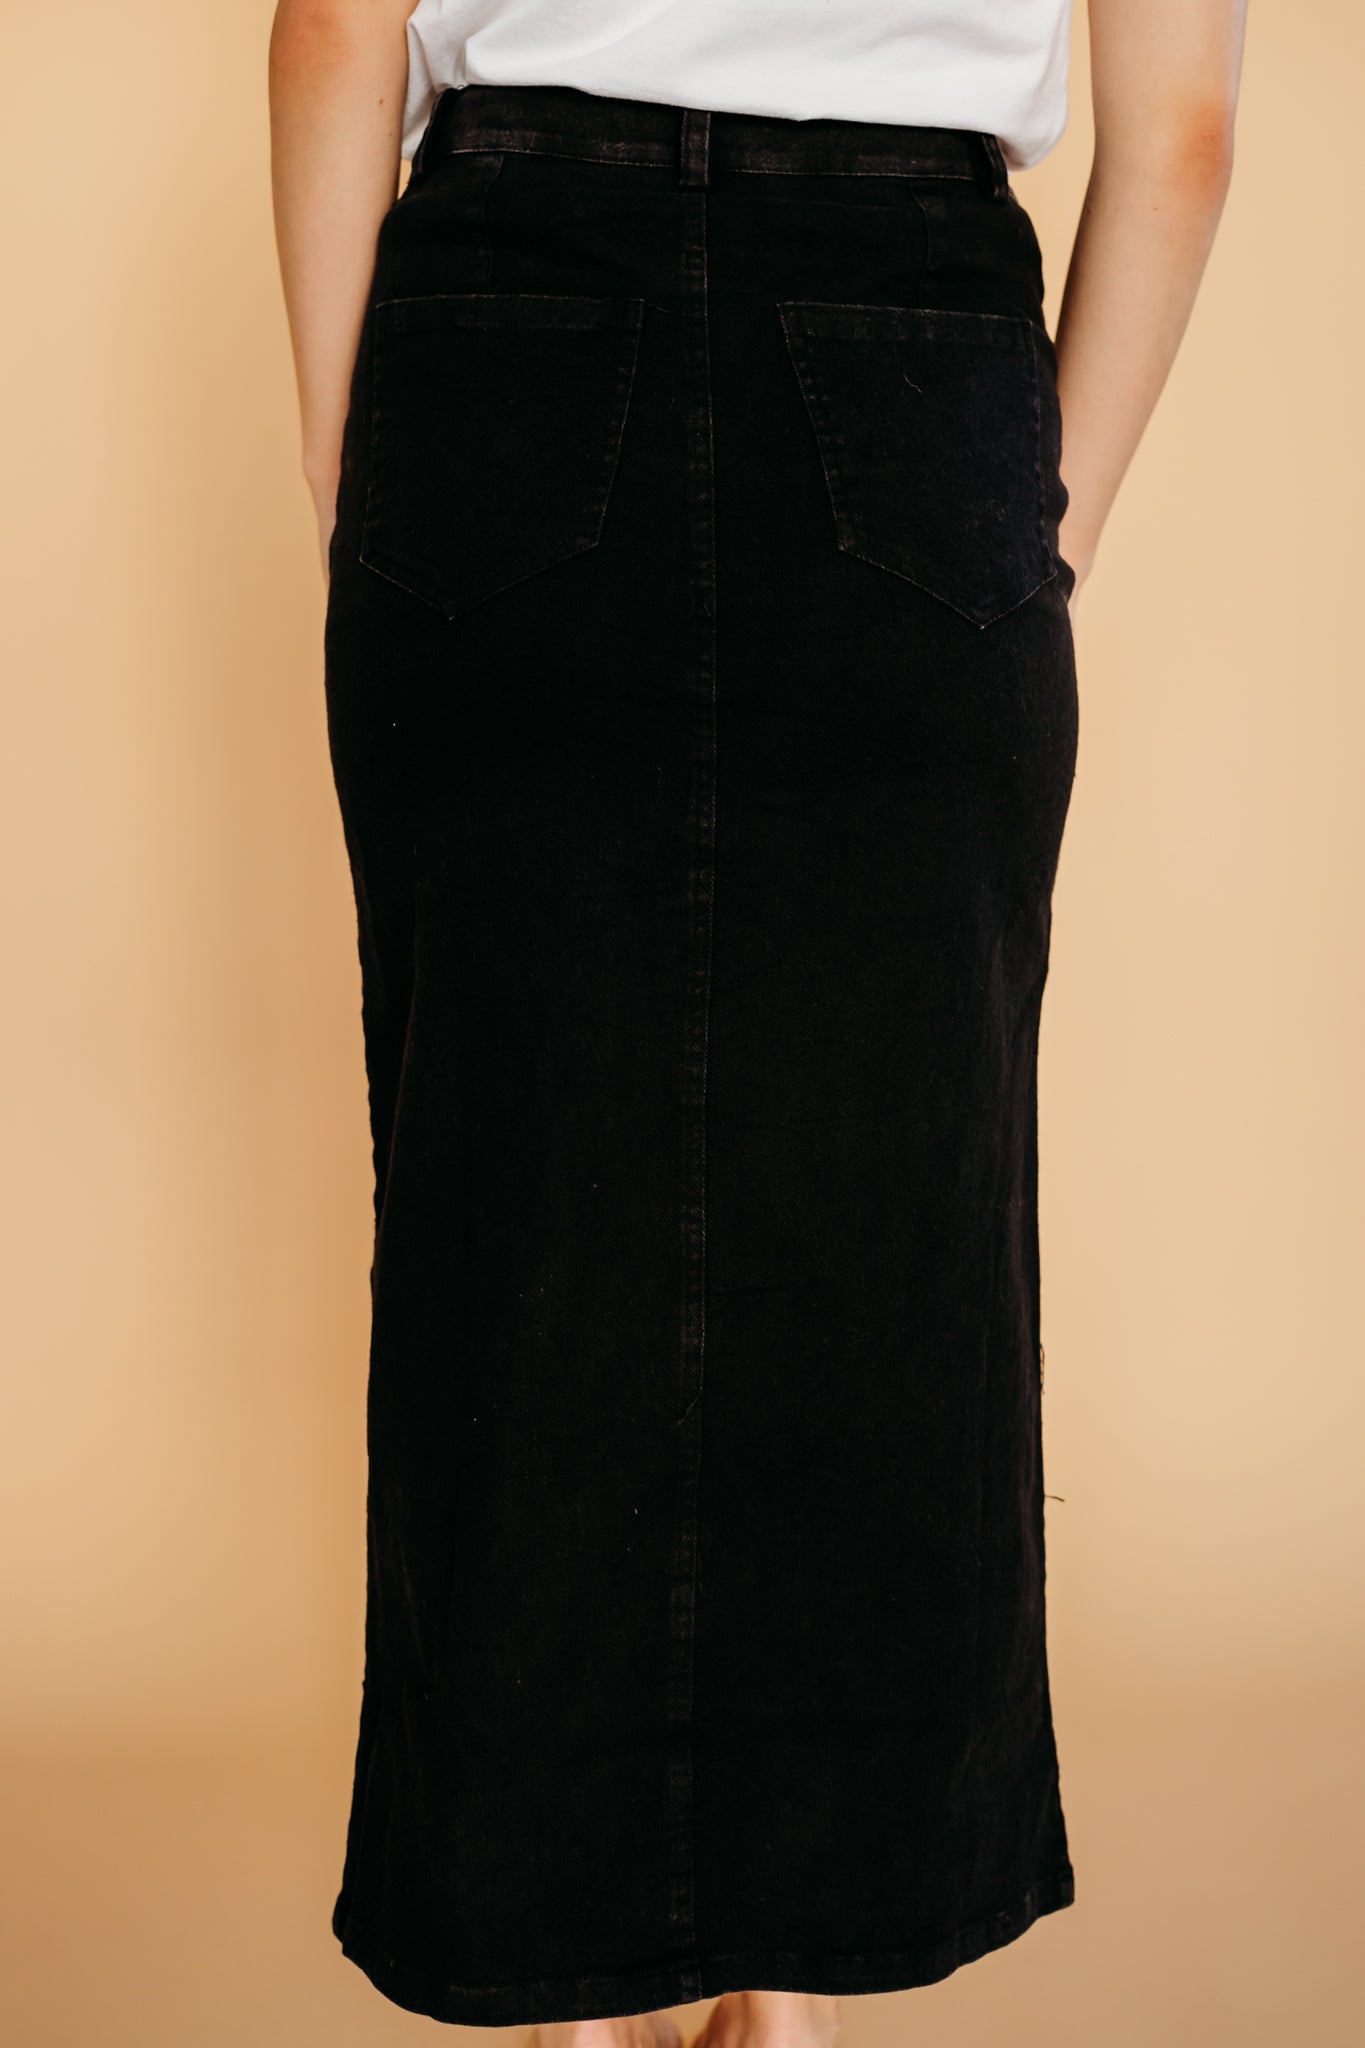 Custom-fit black denim skirt by Studio Heijne